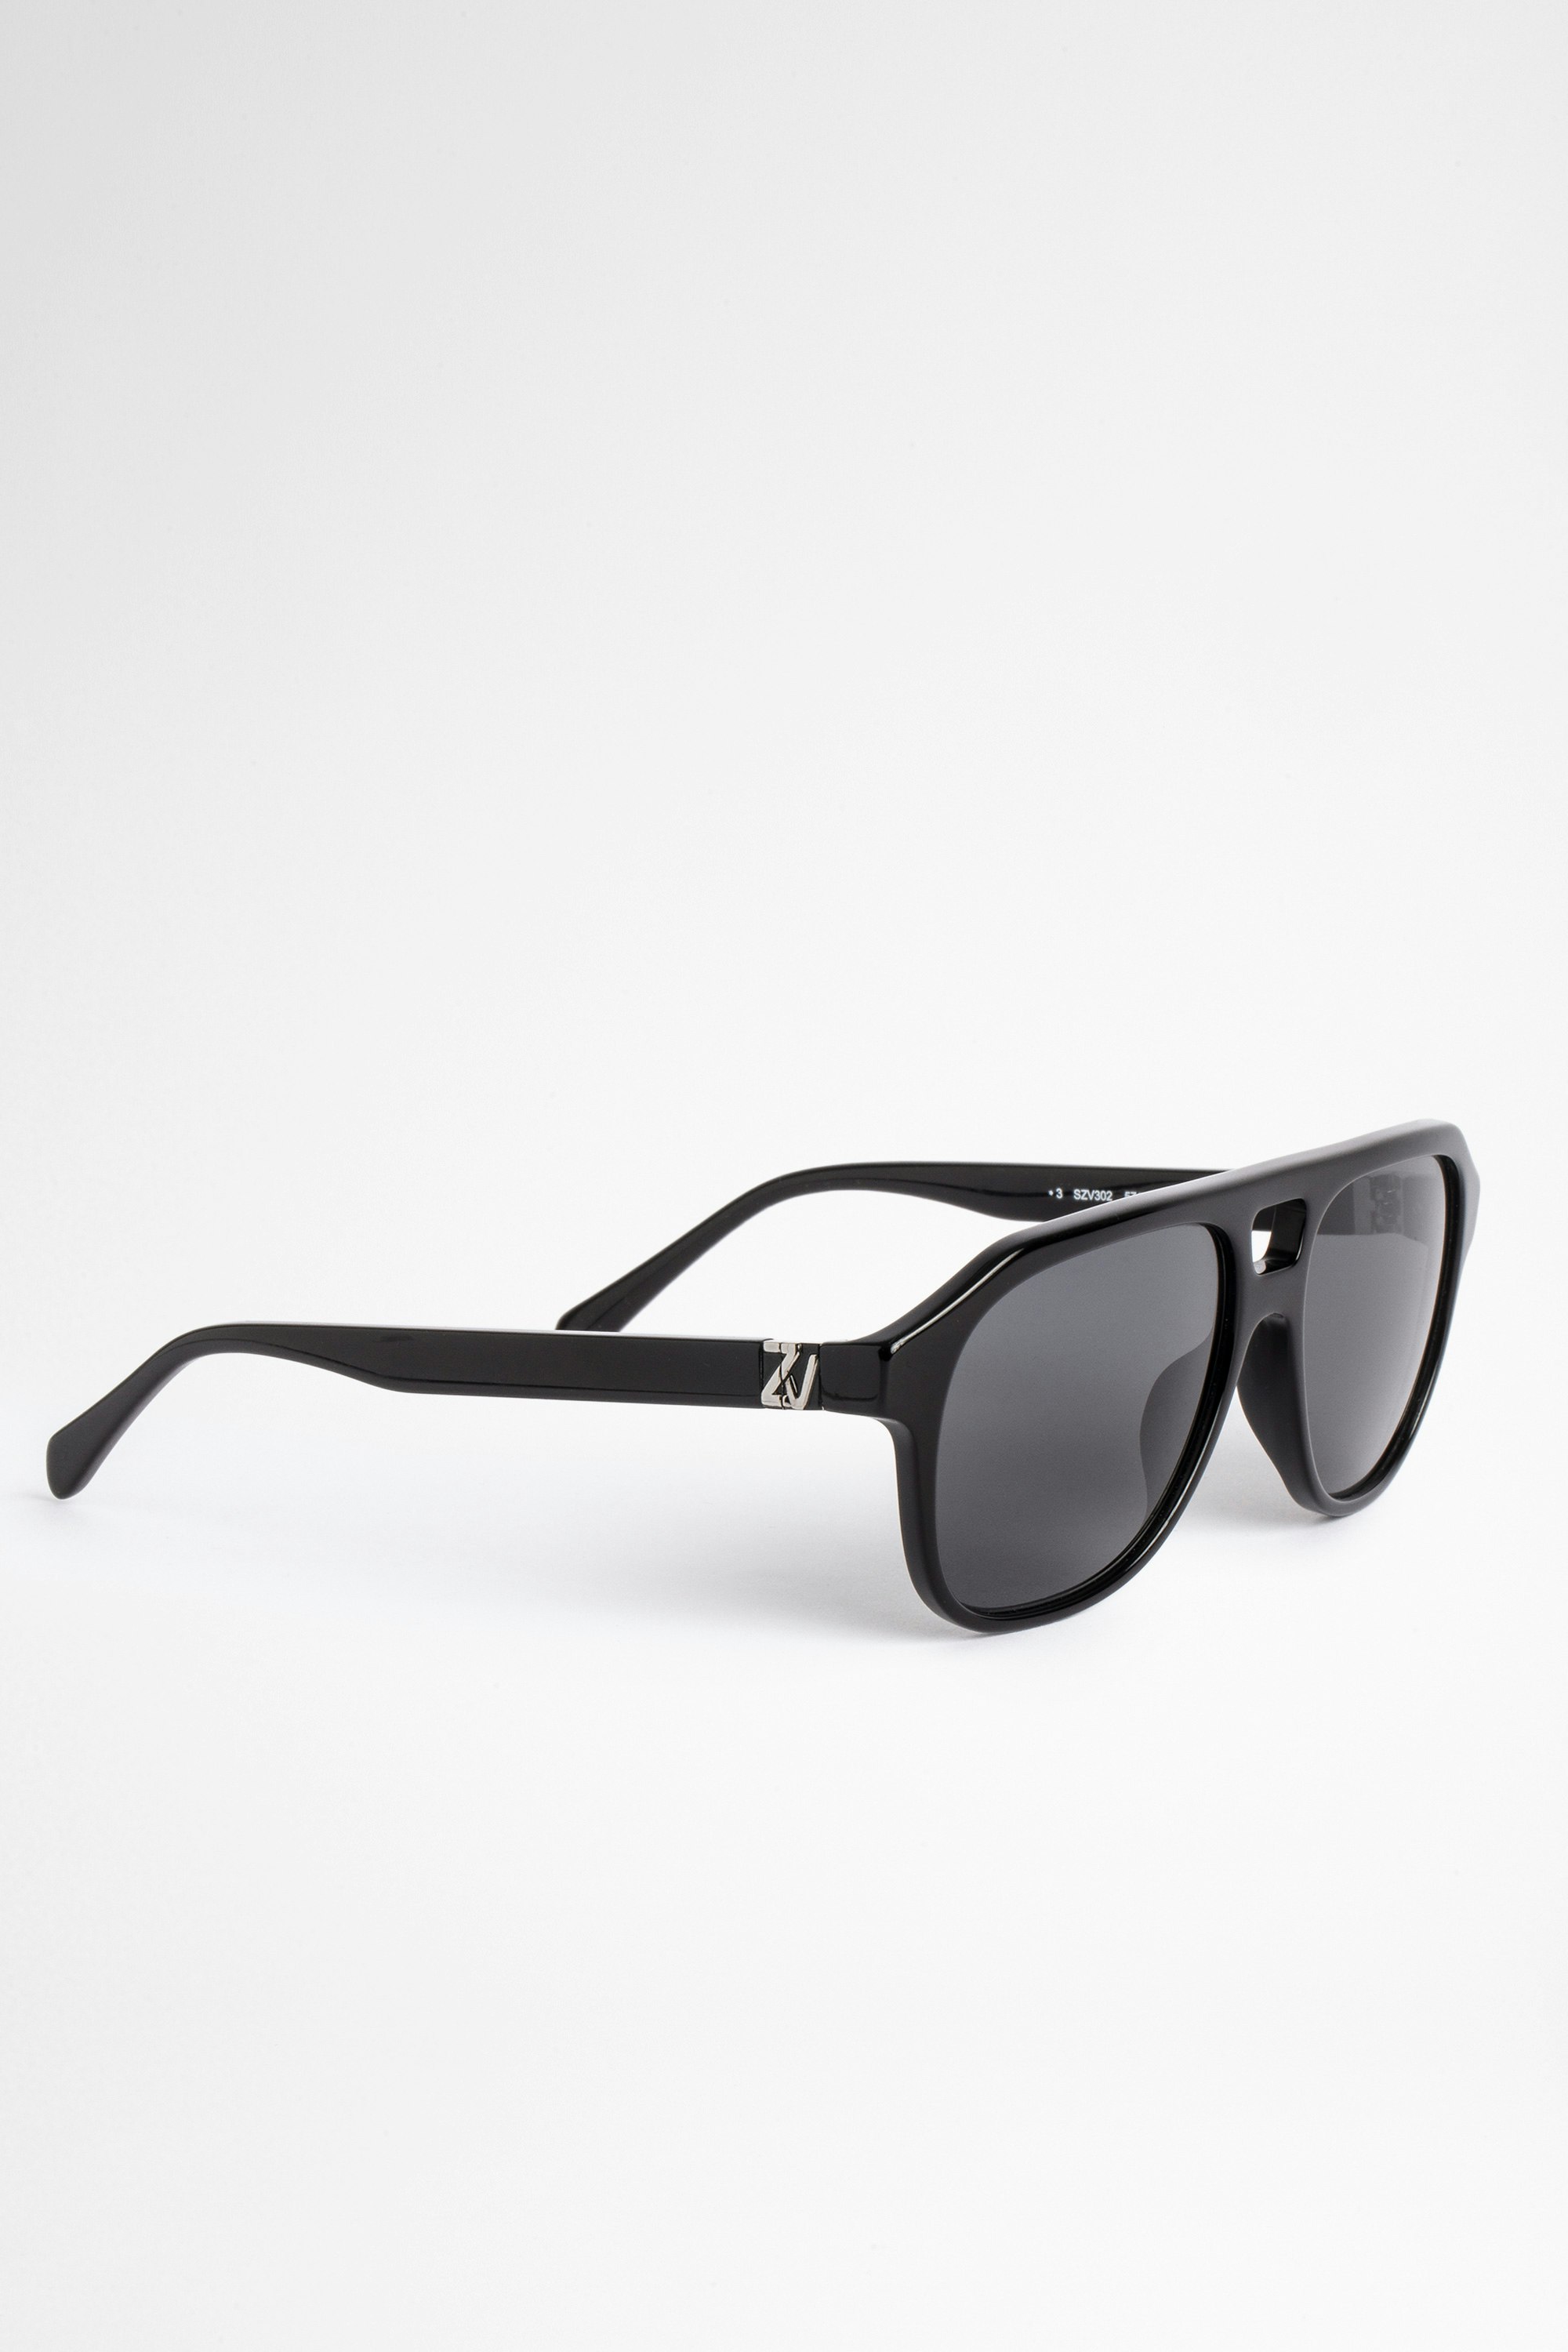 Brille Shiny Zadig&Volatire unisex acetate sunglasses, black color.